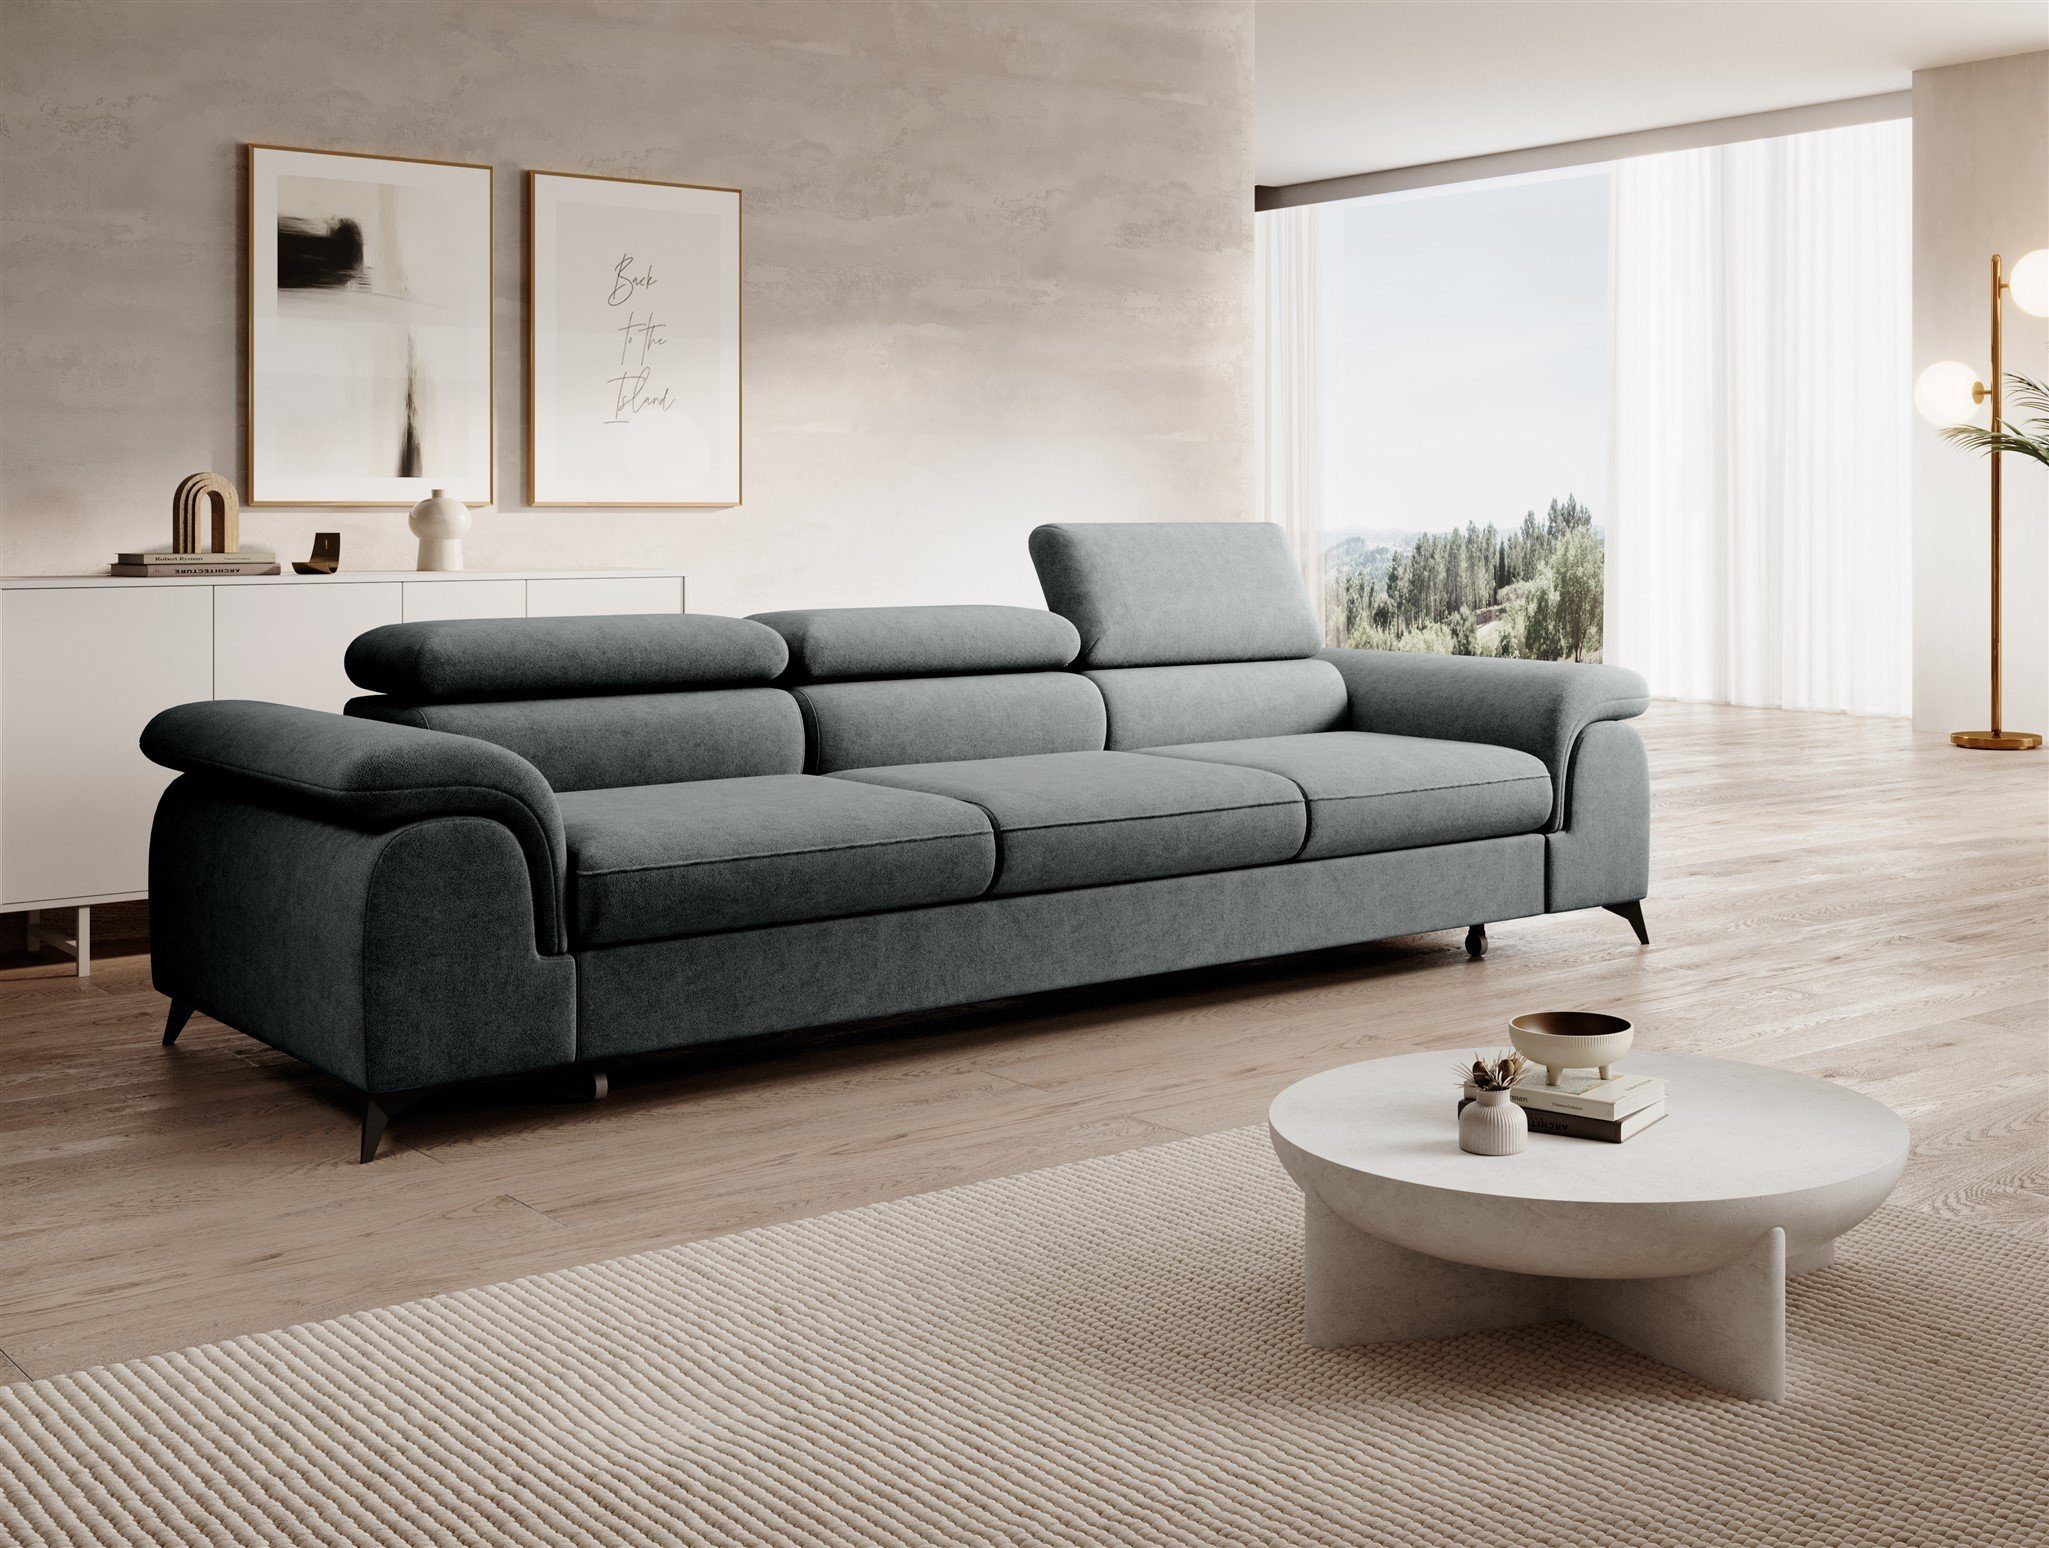 Fun Möbel Big-Sofa Couchgarnitur BASTIEN Megasofa mit Schlaffunktion Stoff Whisper, Kopfstützen verstellbar, Rundumbezug Forest | Big Sofas